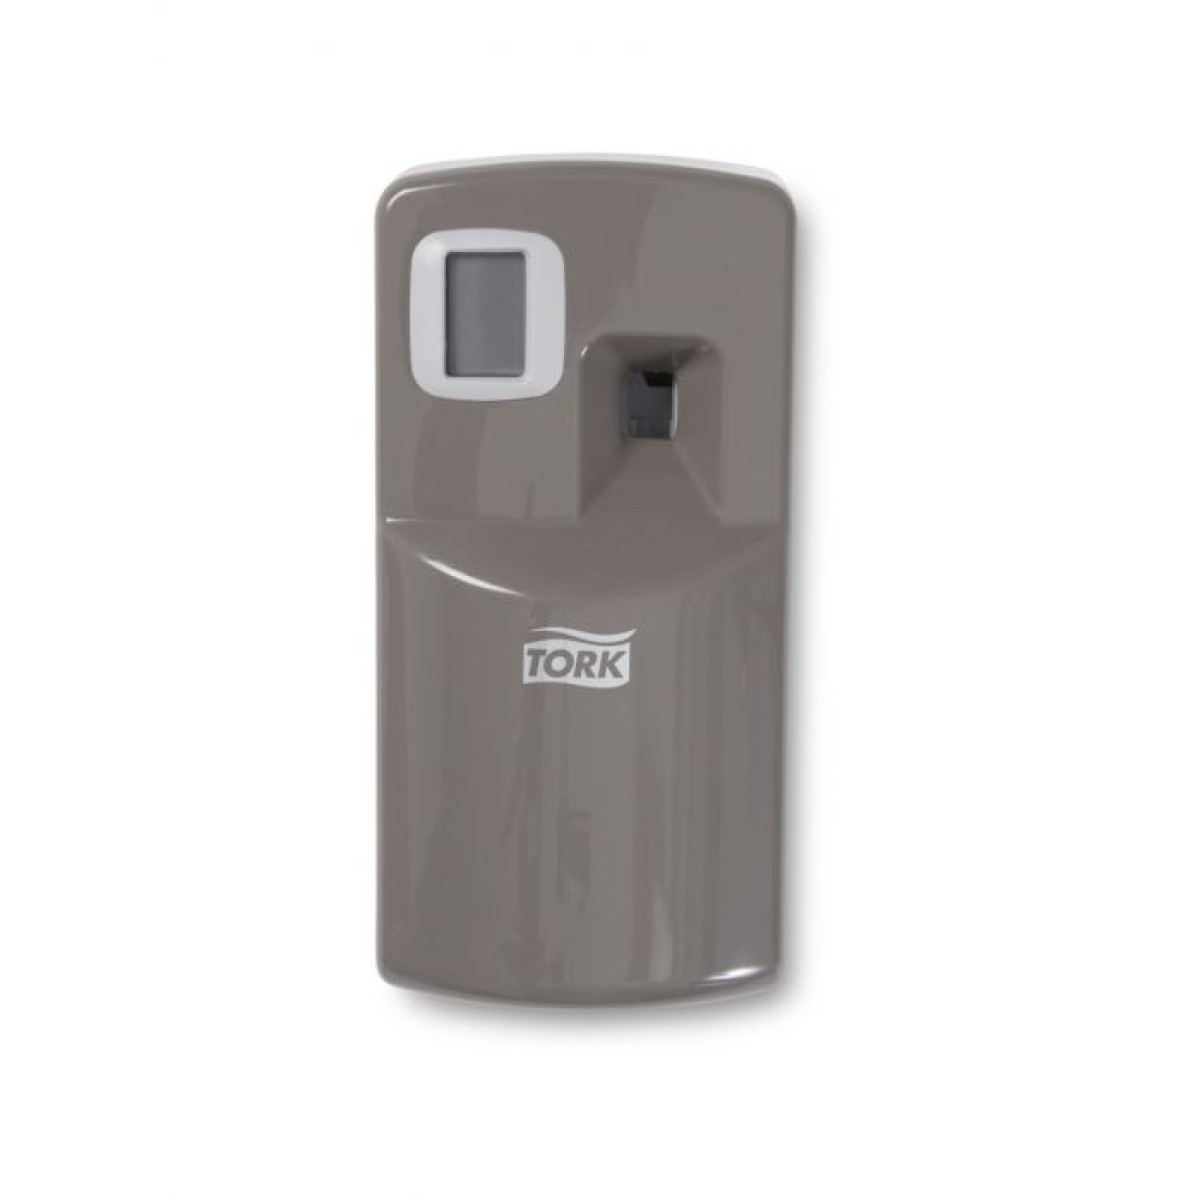 Tork A1 Air Freshener luchtverfrisser dispenser, grijs